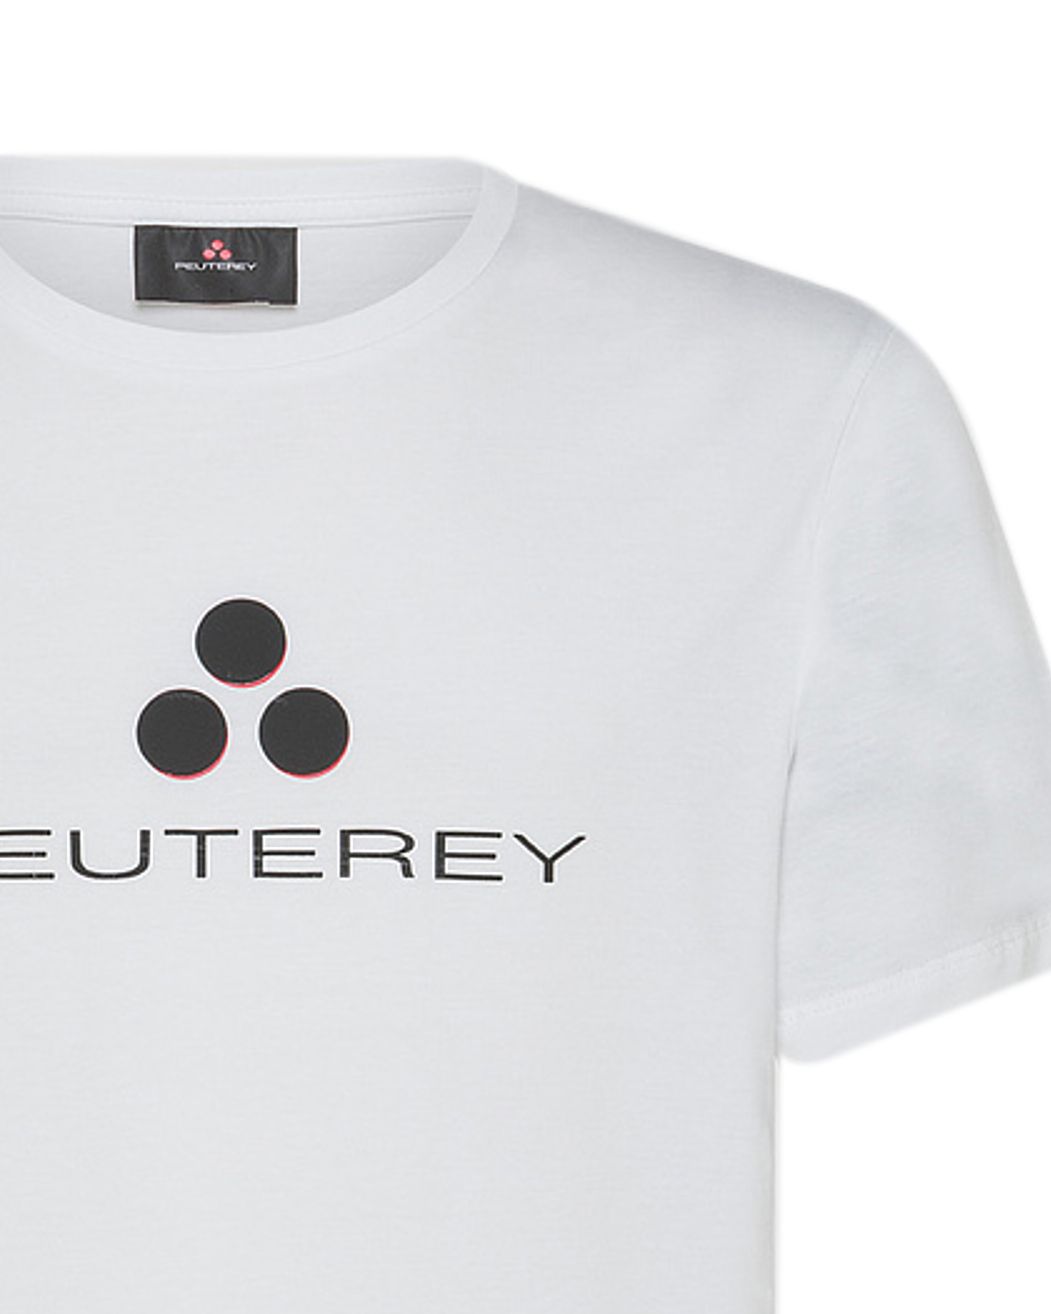 Peuterey T-shirt KM Wit 083994-001-L